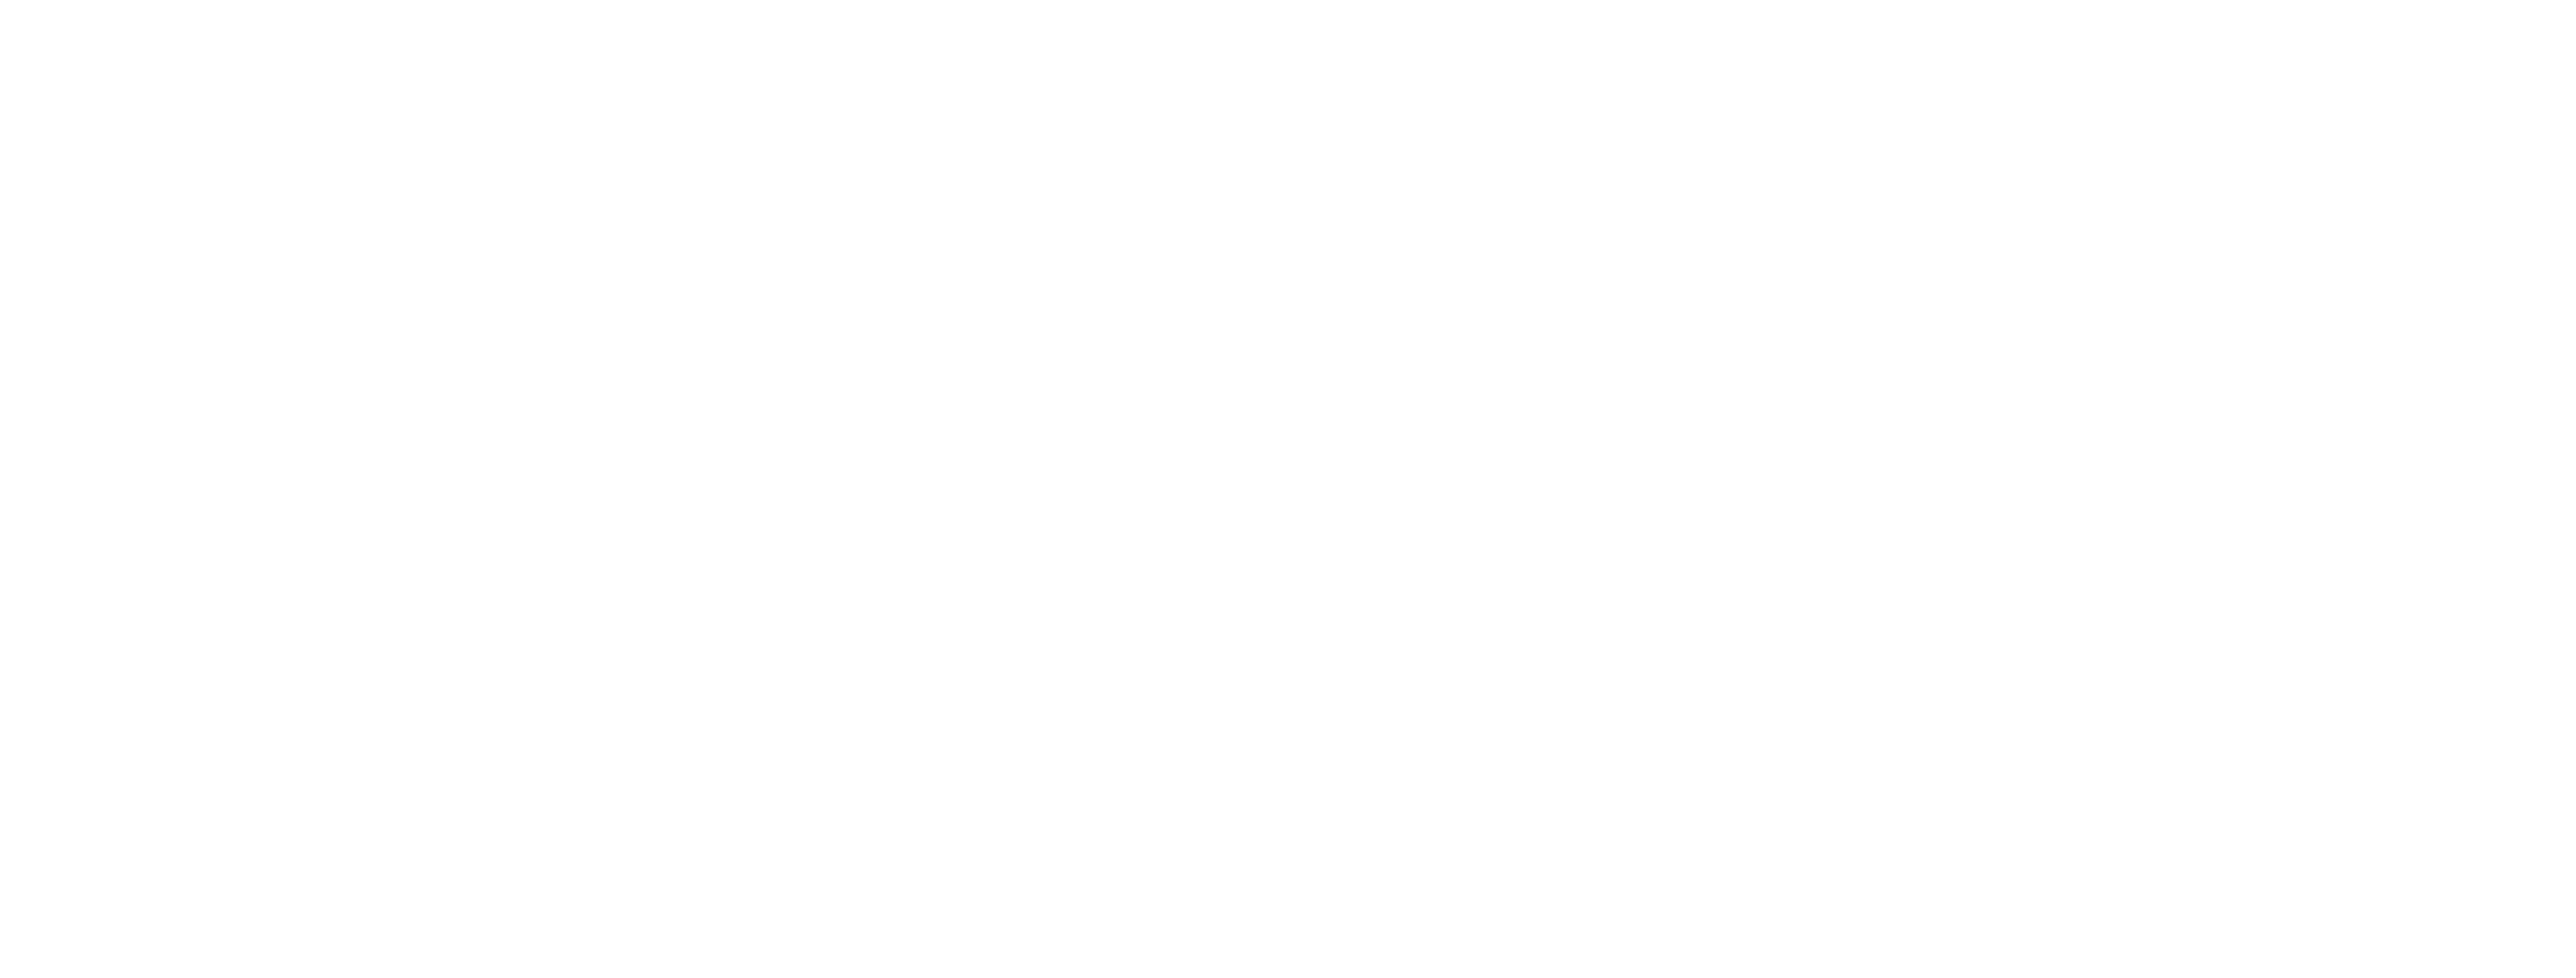 The Escape of Prisoner 614 logo